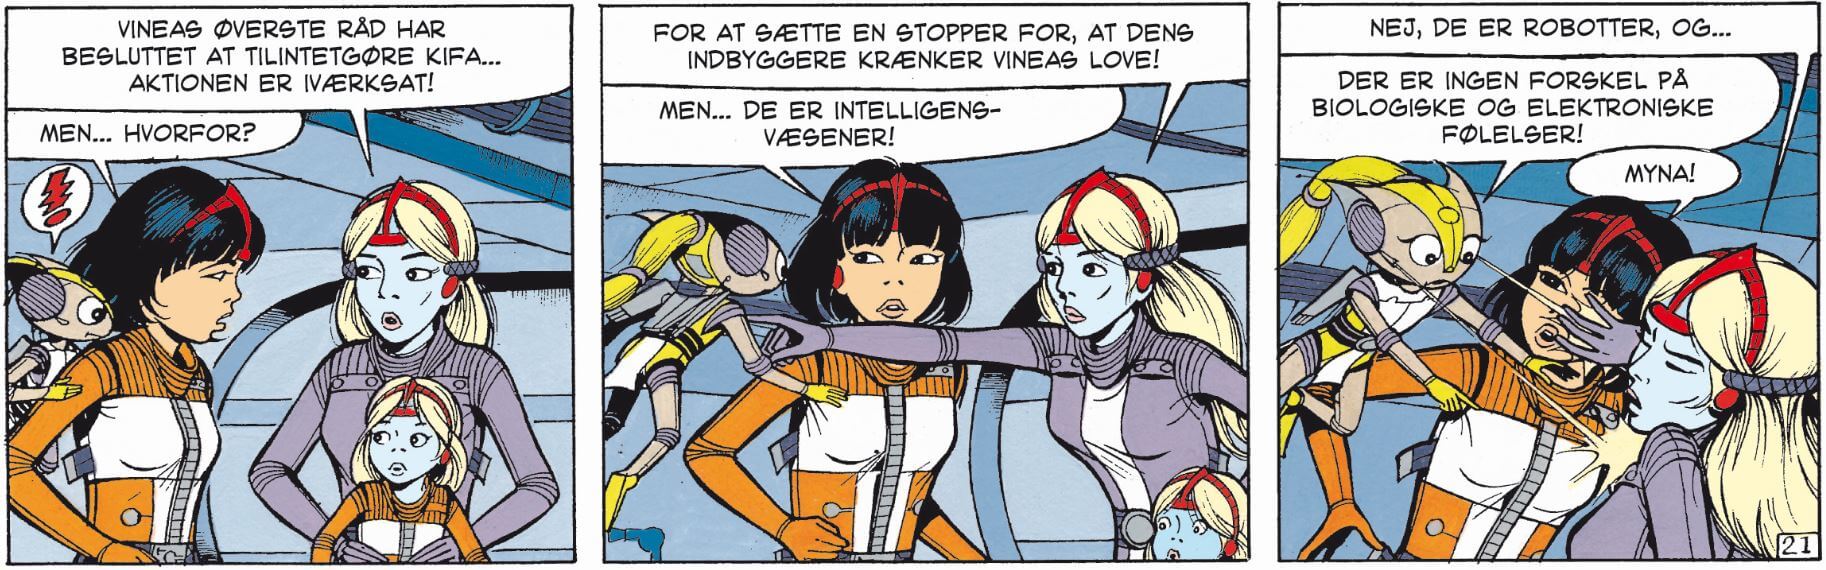 Yoko Tsuno samlebind 6: Robotter fra nær og fjern side 95